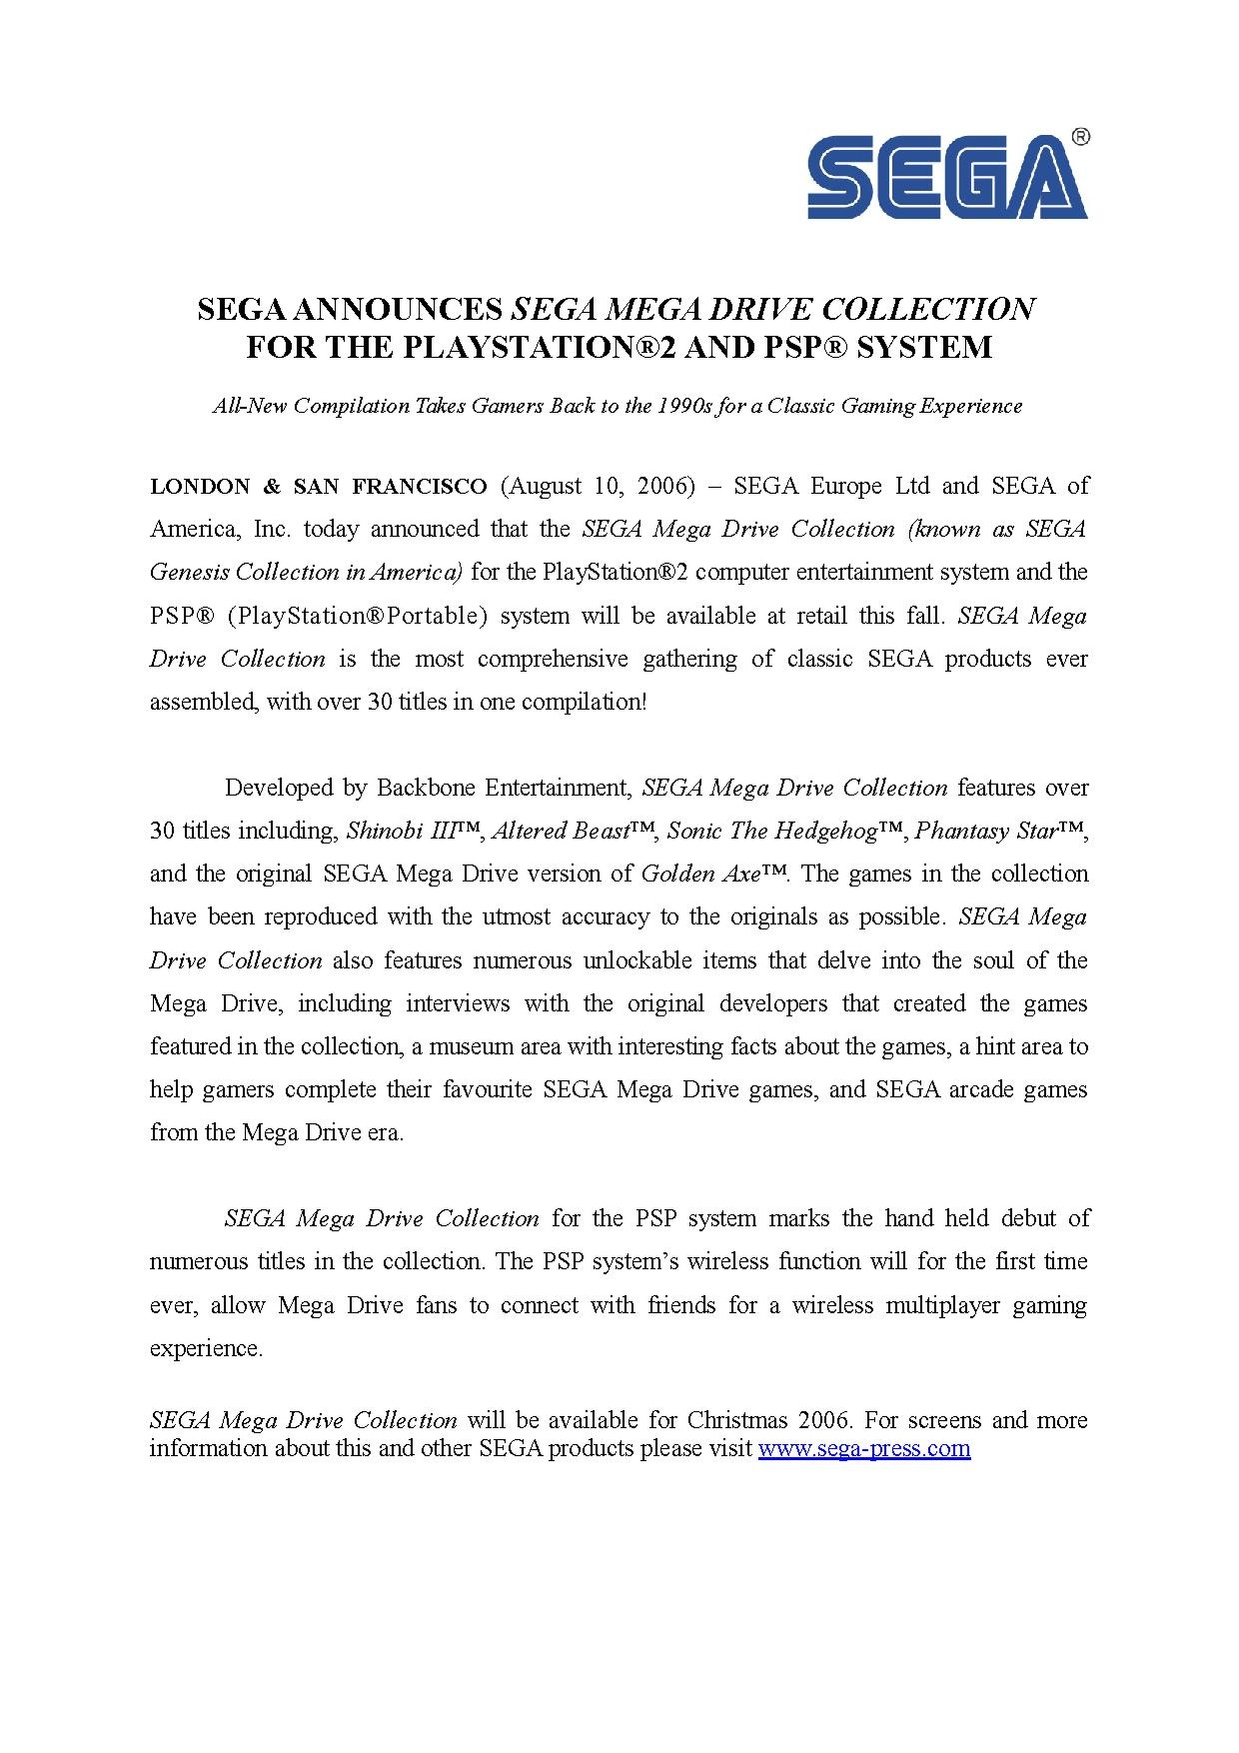 SegaMegaDriveCollection announce FINAL.pdf